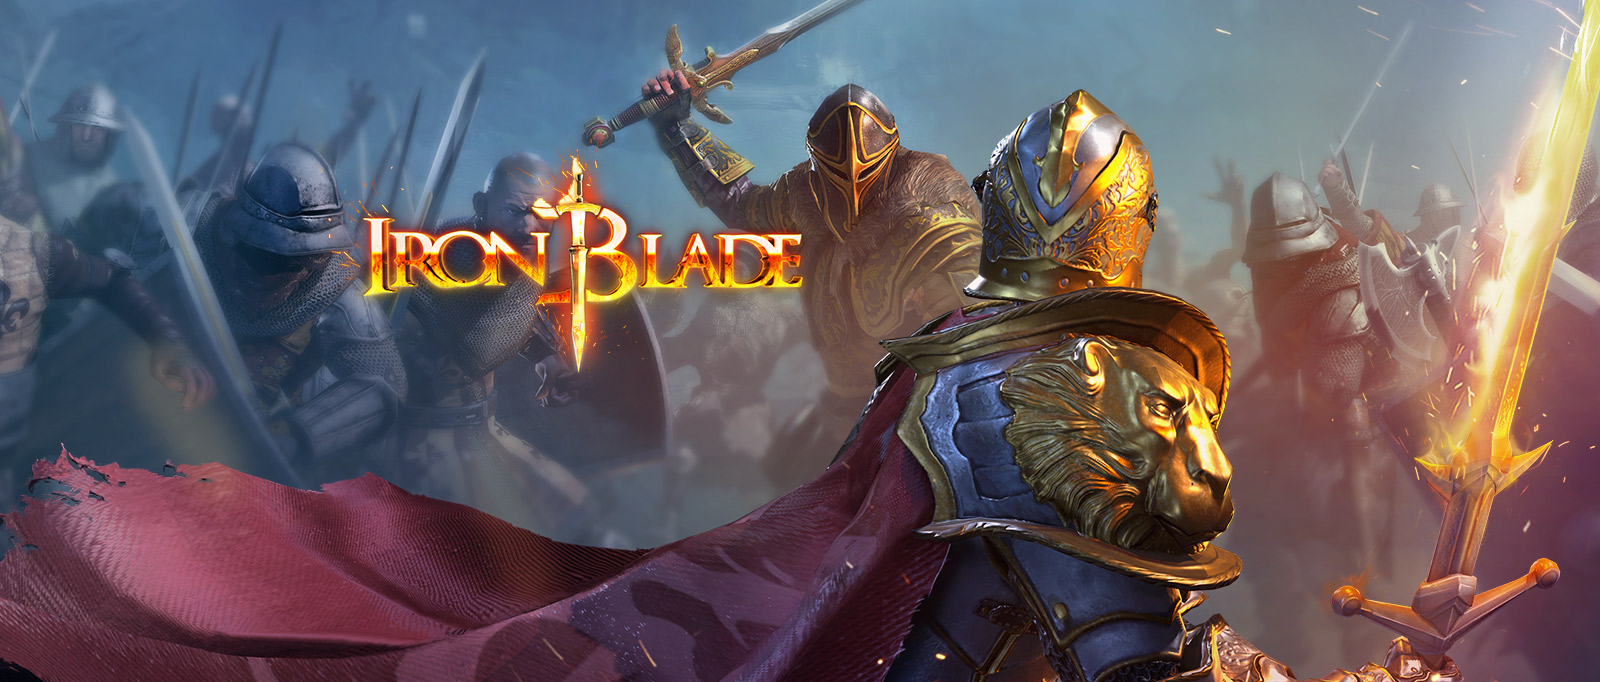 Iron Blade: Mitos Medievales RPG